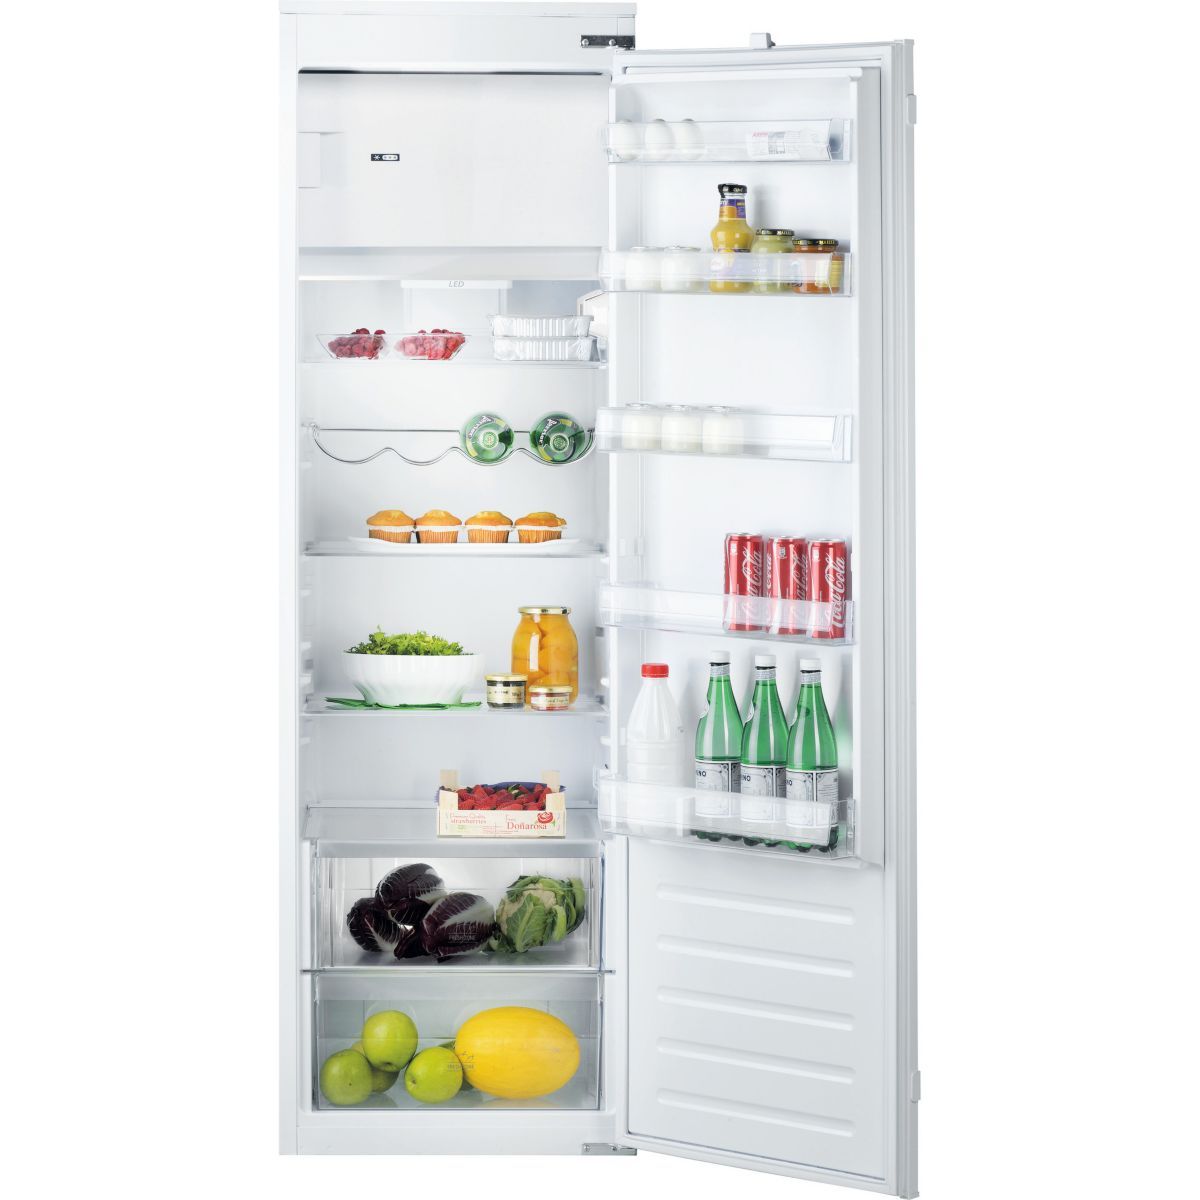 Réfrigérateur encastrable blanc 292L - ARG184701 - Whirlpool